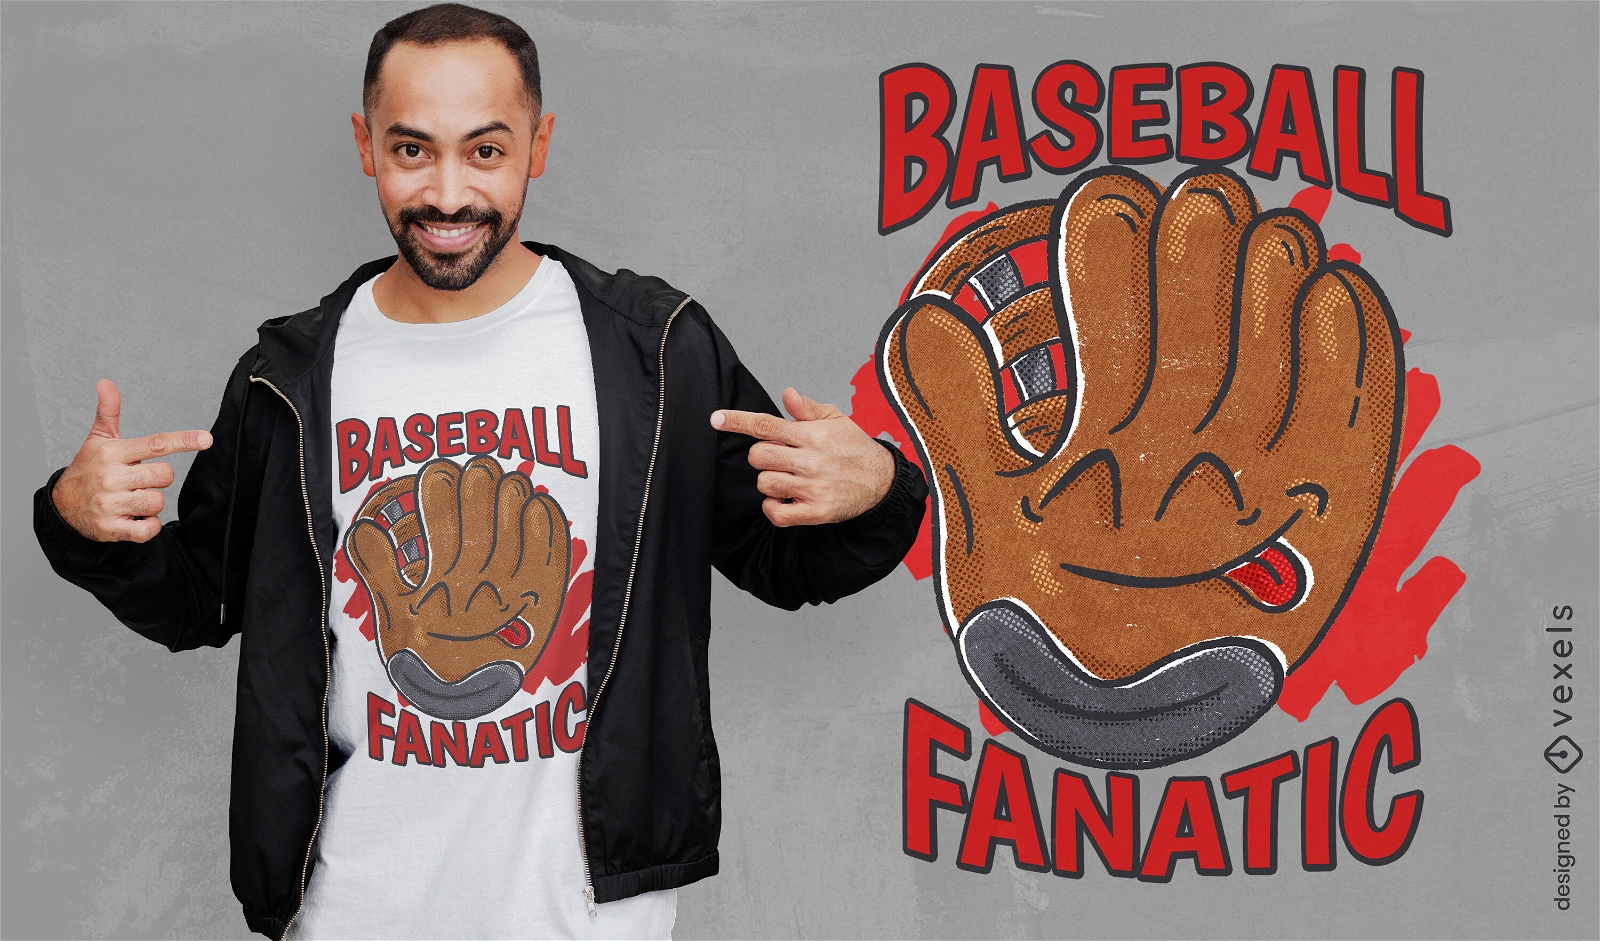 Baseball glove fan t-shirt design